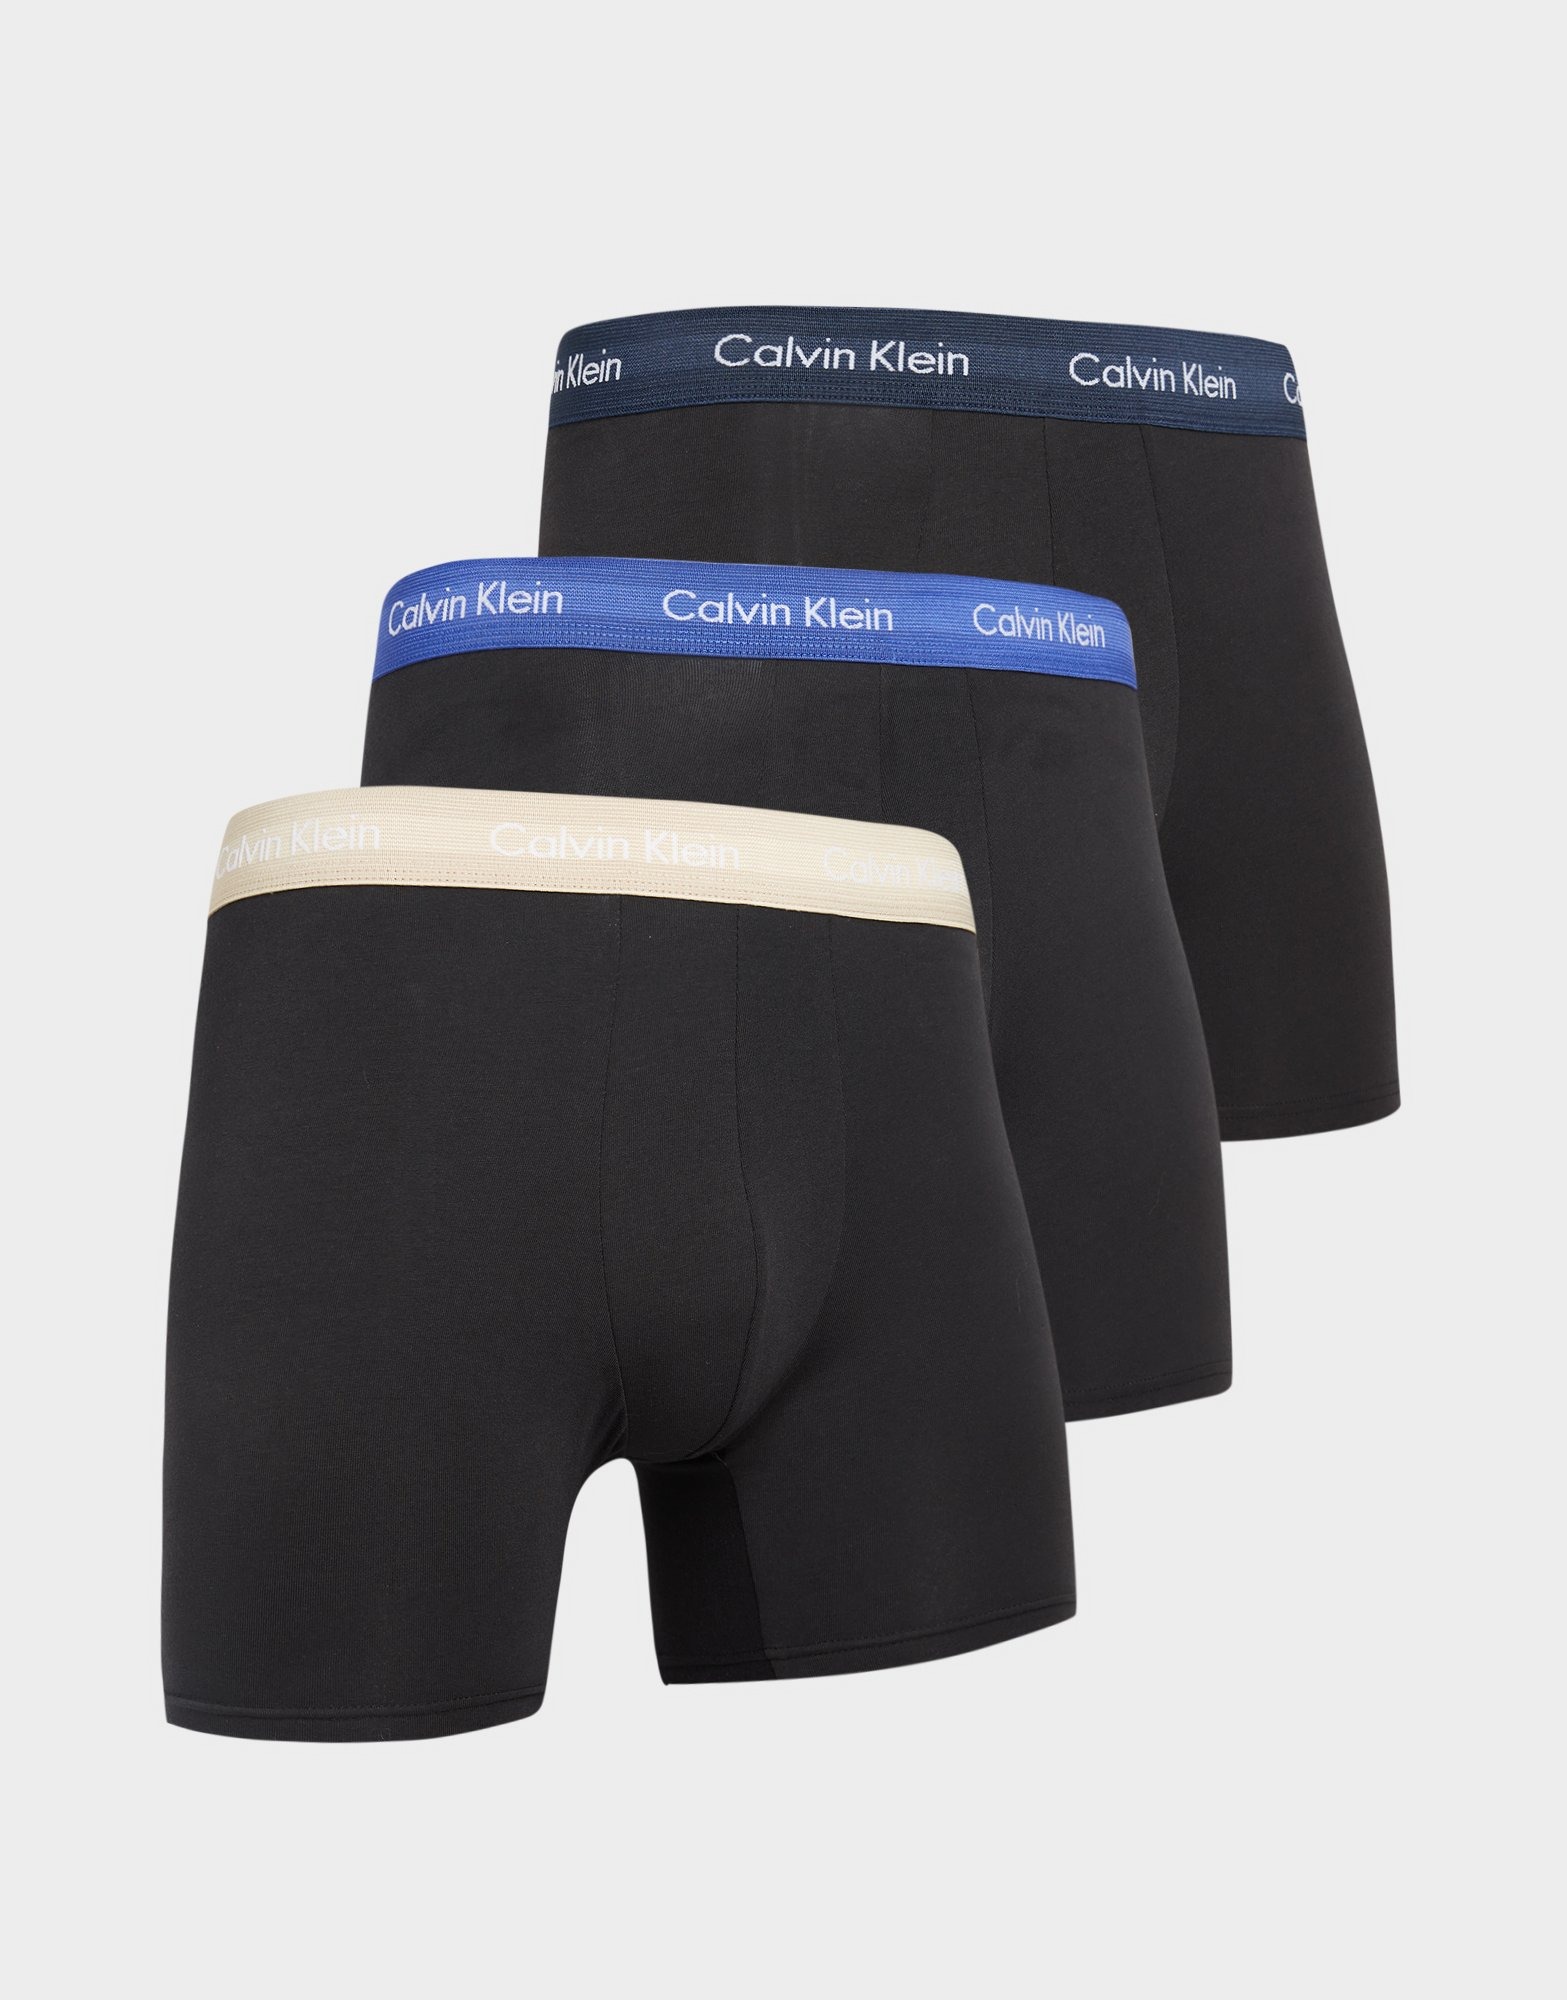 Sort Klein Underwear 3-pak boxer shorts JD Sports